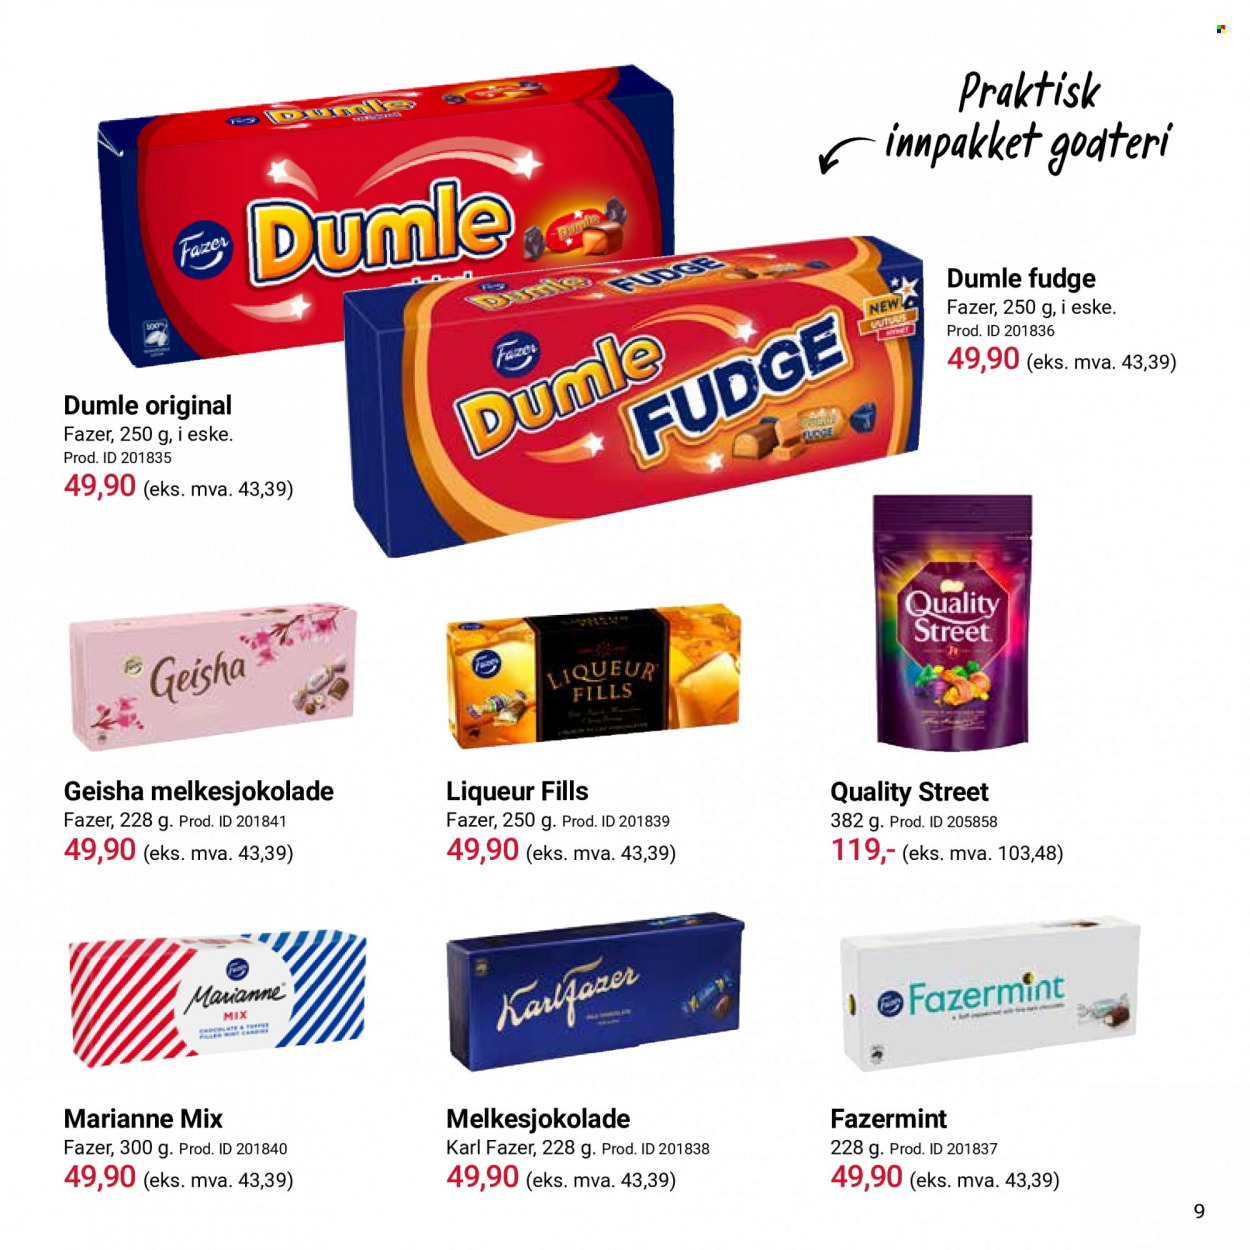 Kundeavis Europris - Produkter fra tilbudsaviser - melkesjokolade. Side 9.